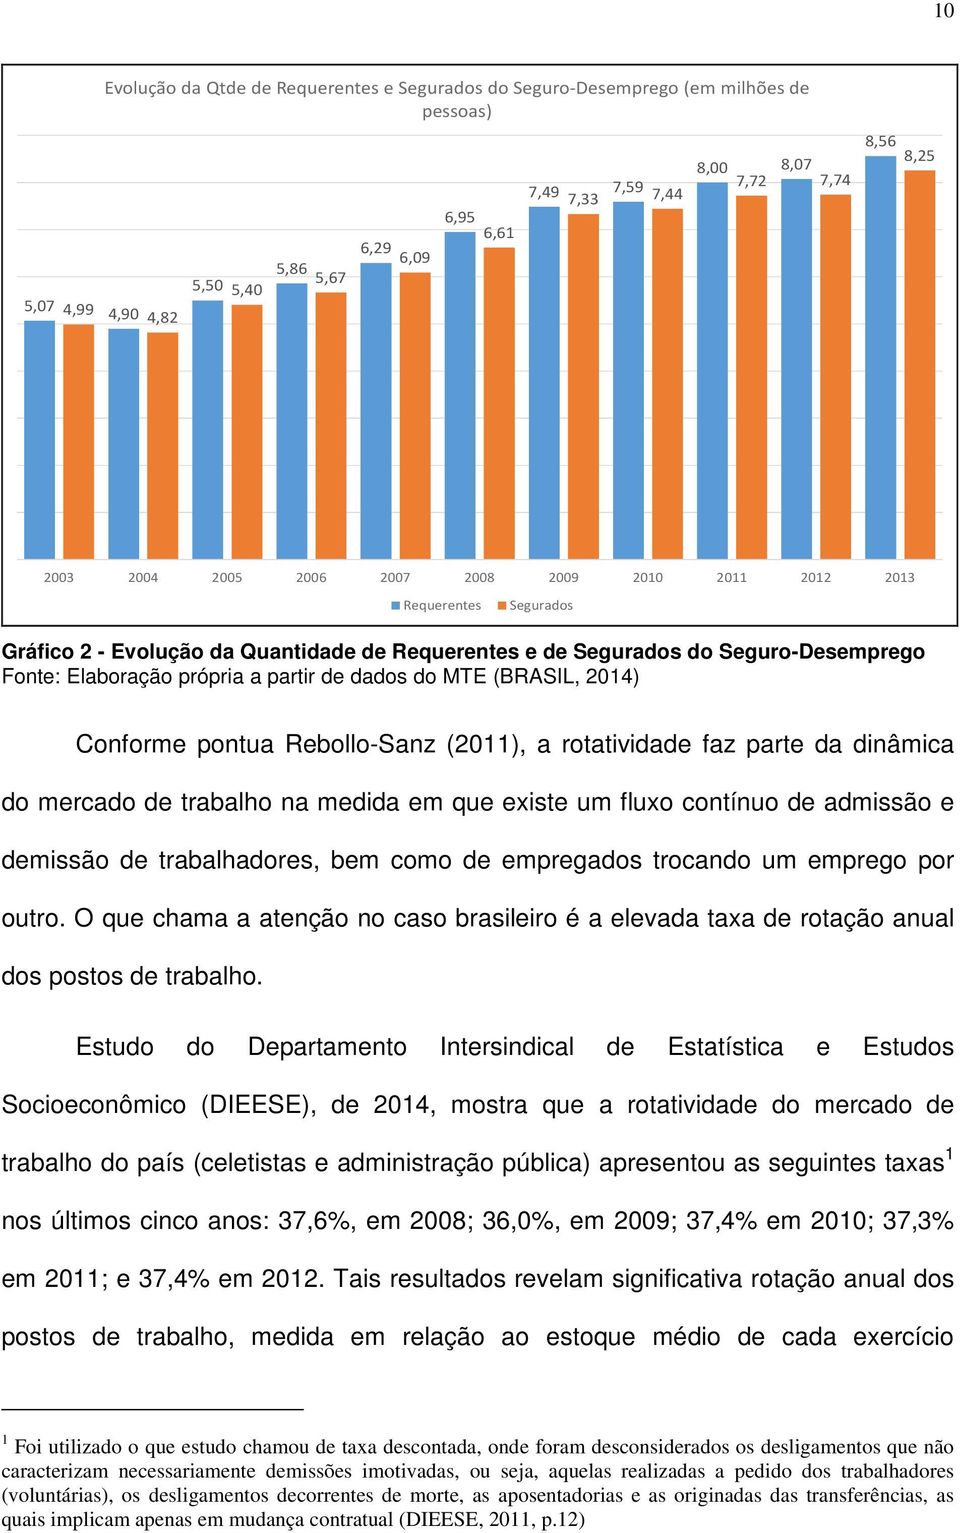 partir de dados do MTE (BRASIL, 2014) Conforme pontua Rebollo-Sanz (2011), a rotatividade faz parte da dinâmica do mercado de trabalho na medida em que existe um fluxo contínuo de admissão e demissão